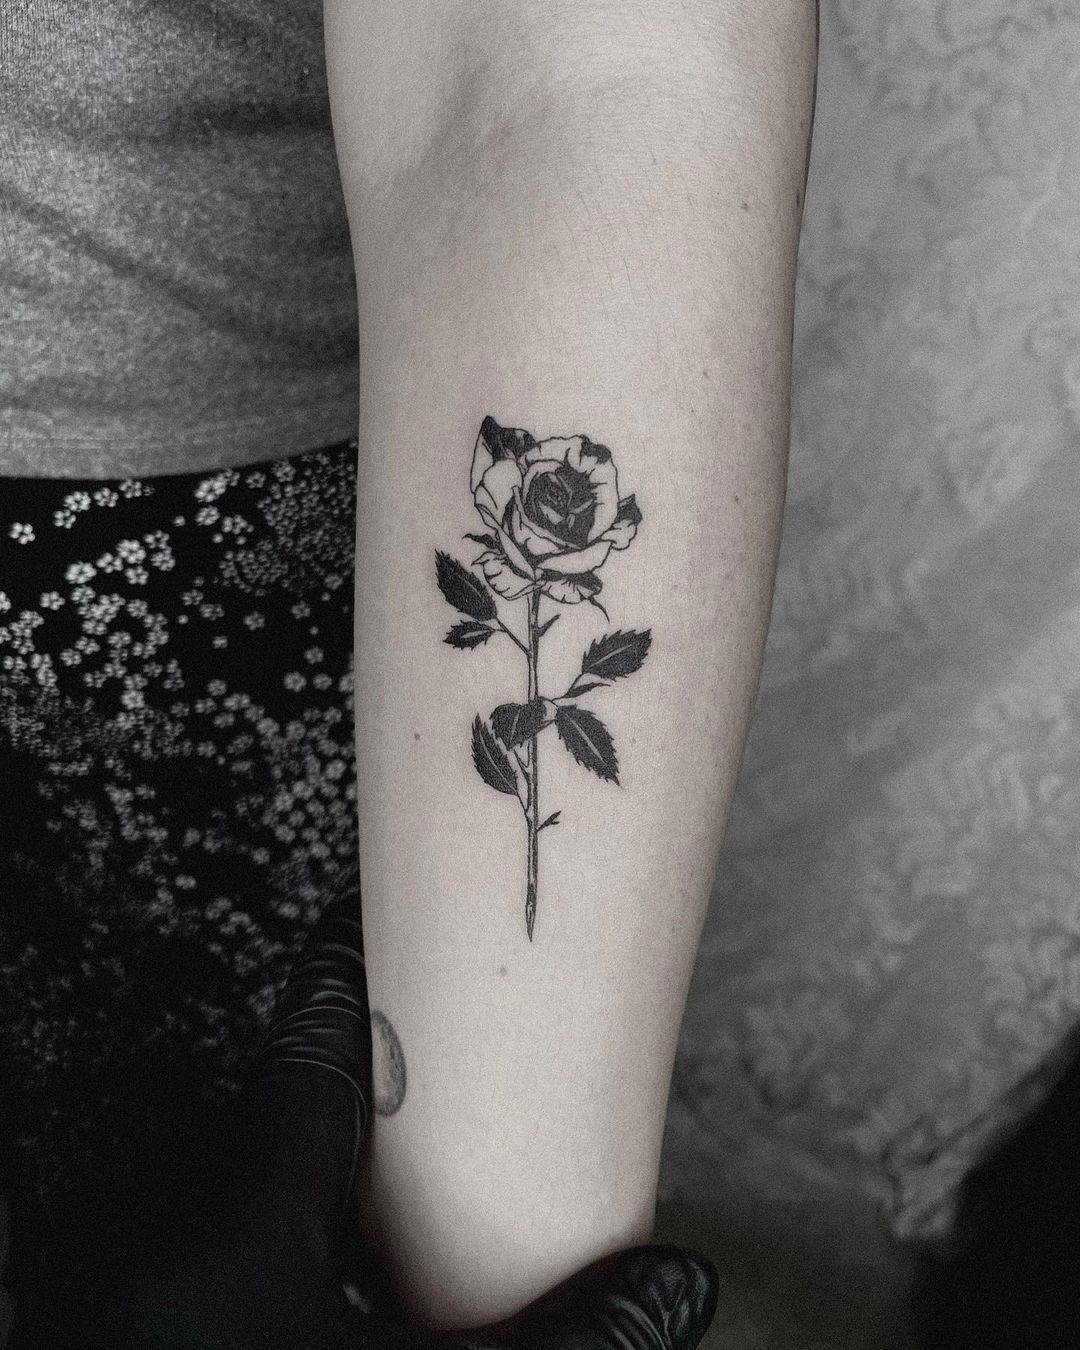 Forearm rose tattoo 1